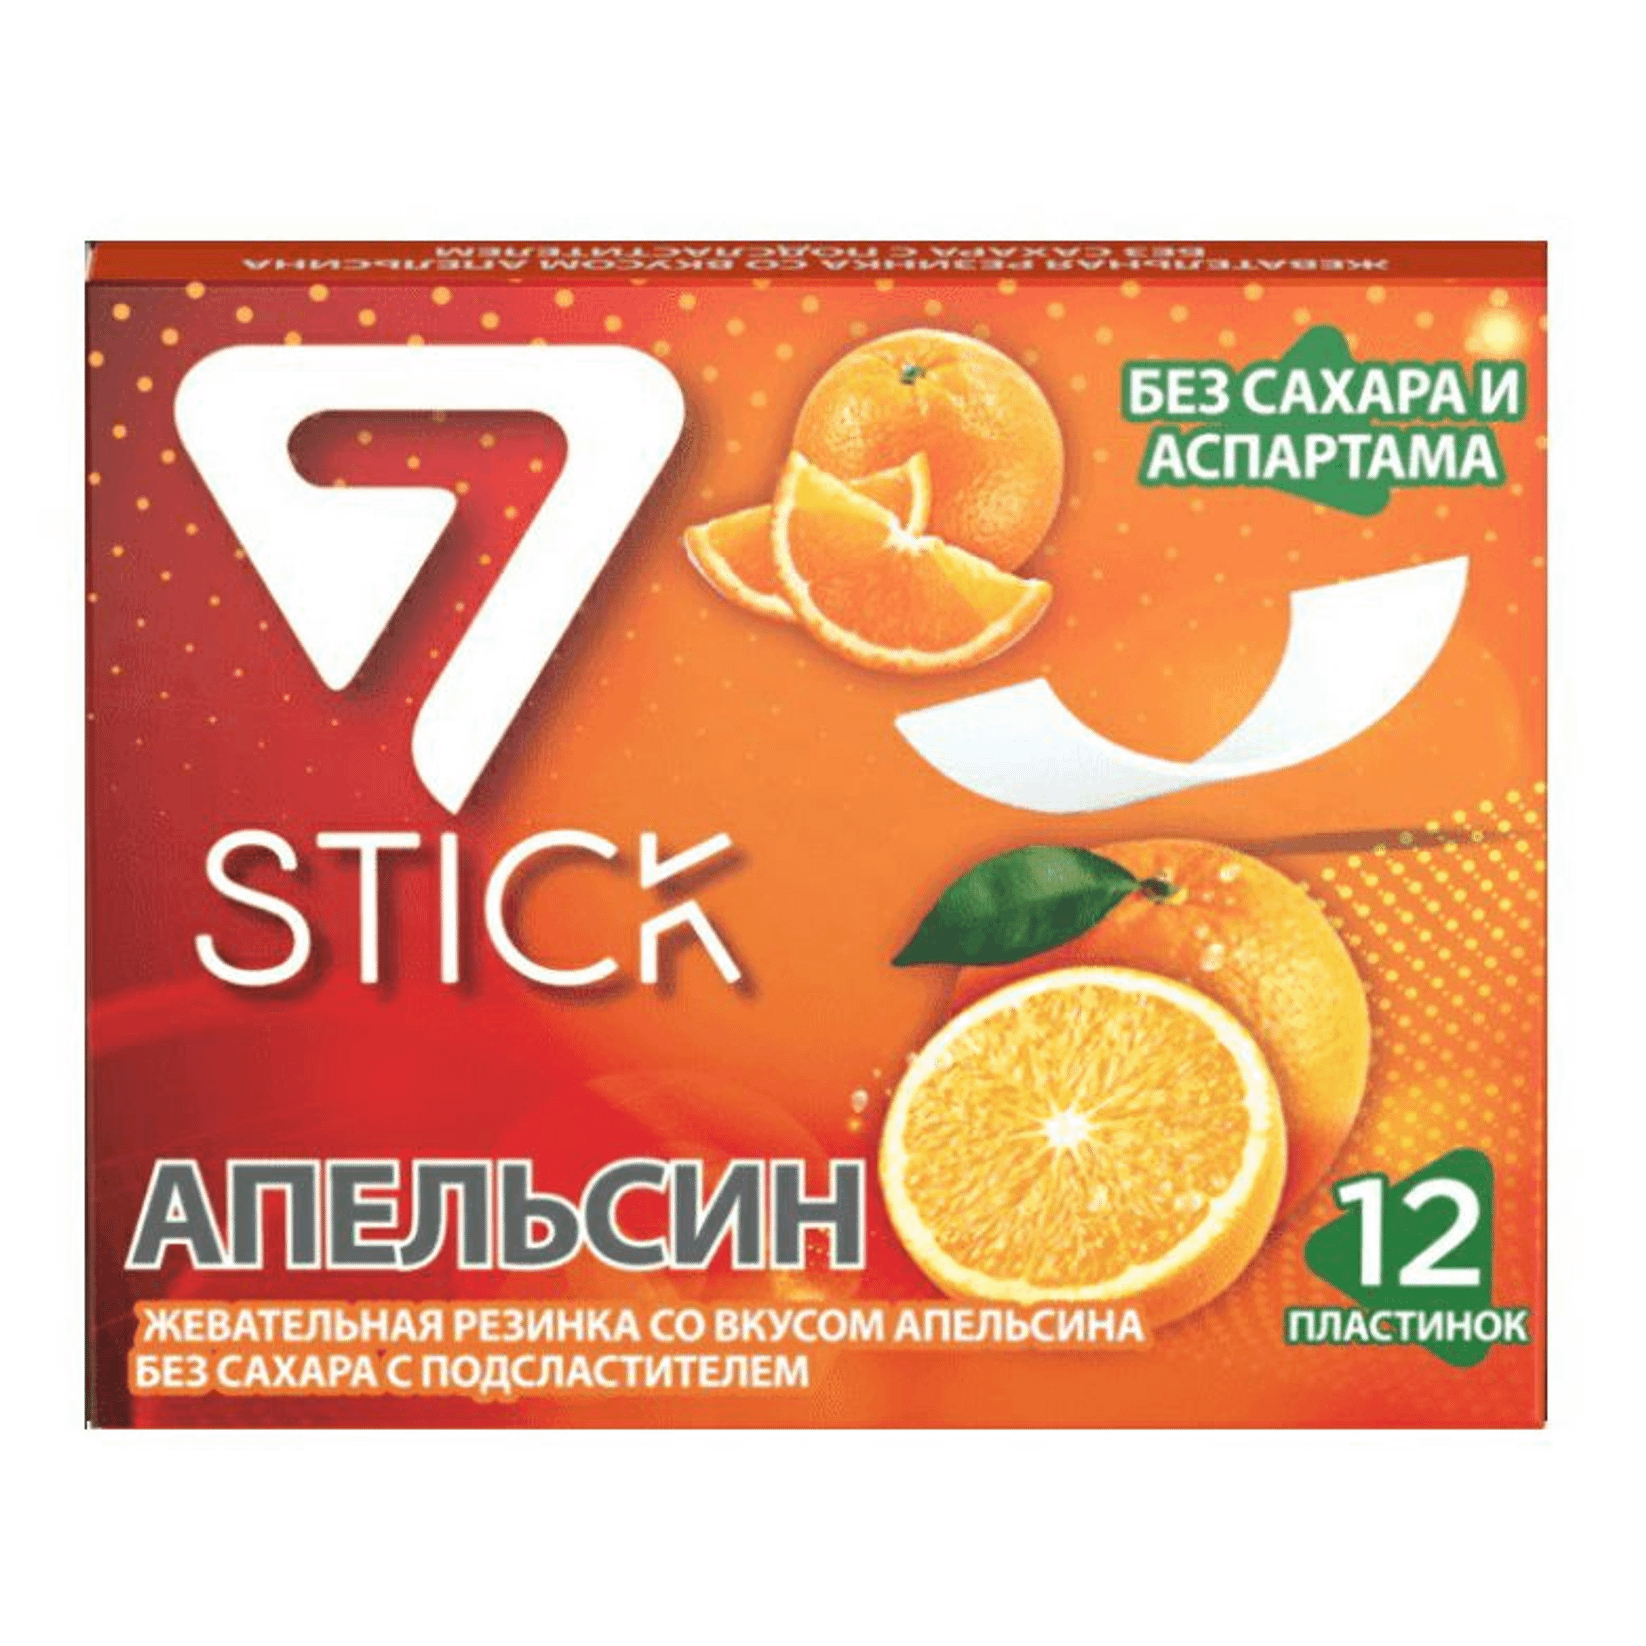 Жевательная резинка 7 Stick Апельсин, 12 пластинок